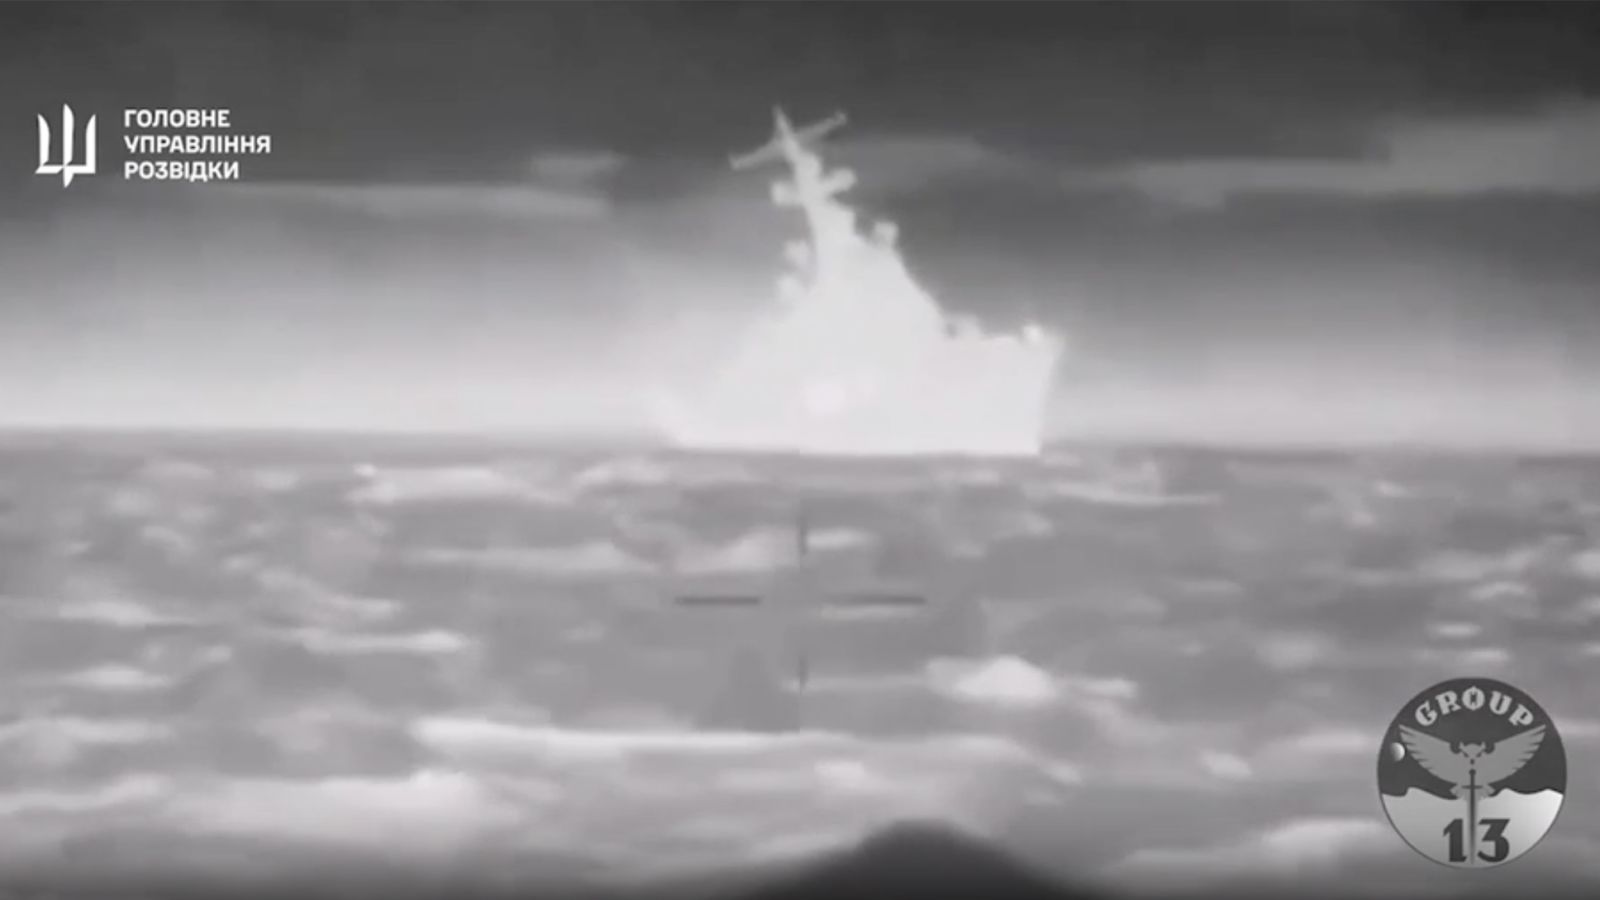 Ucrania asegura que hundió un buque de guerra ruso frente a la costa de Crimea y desató un bombardeo "masivo" de misiles en la península